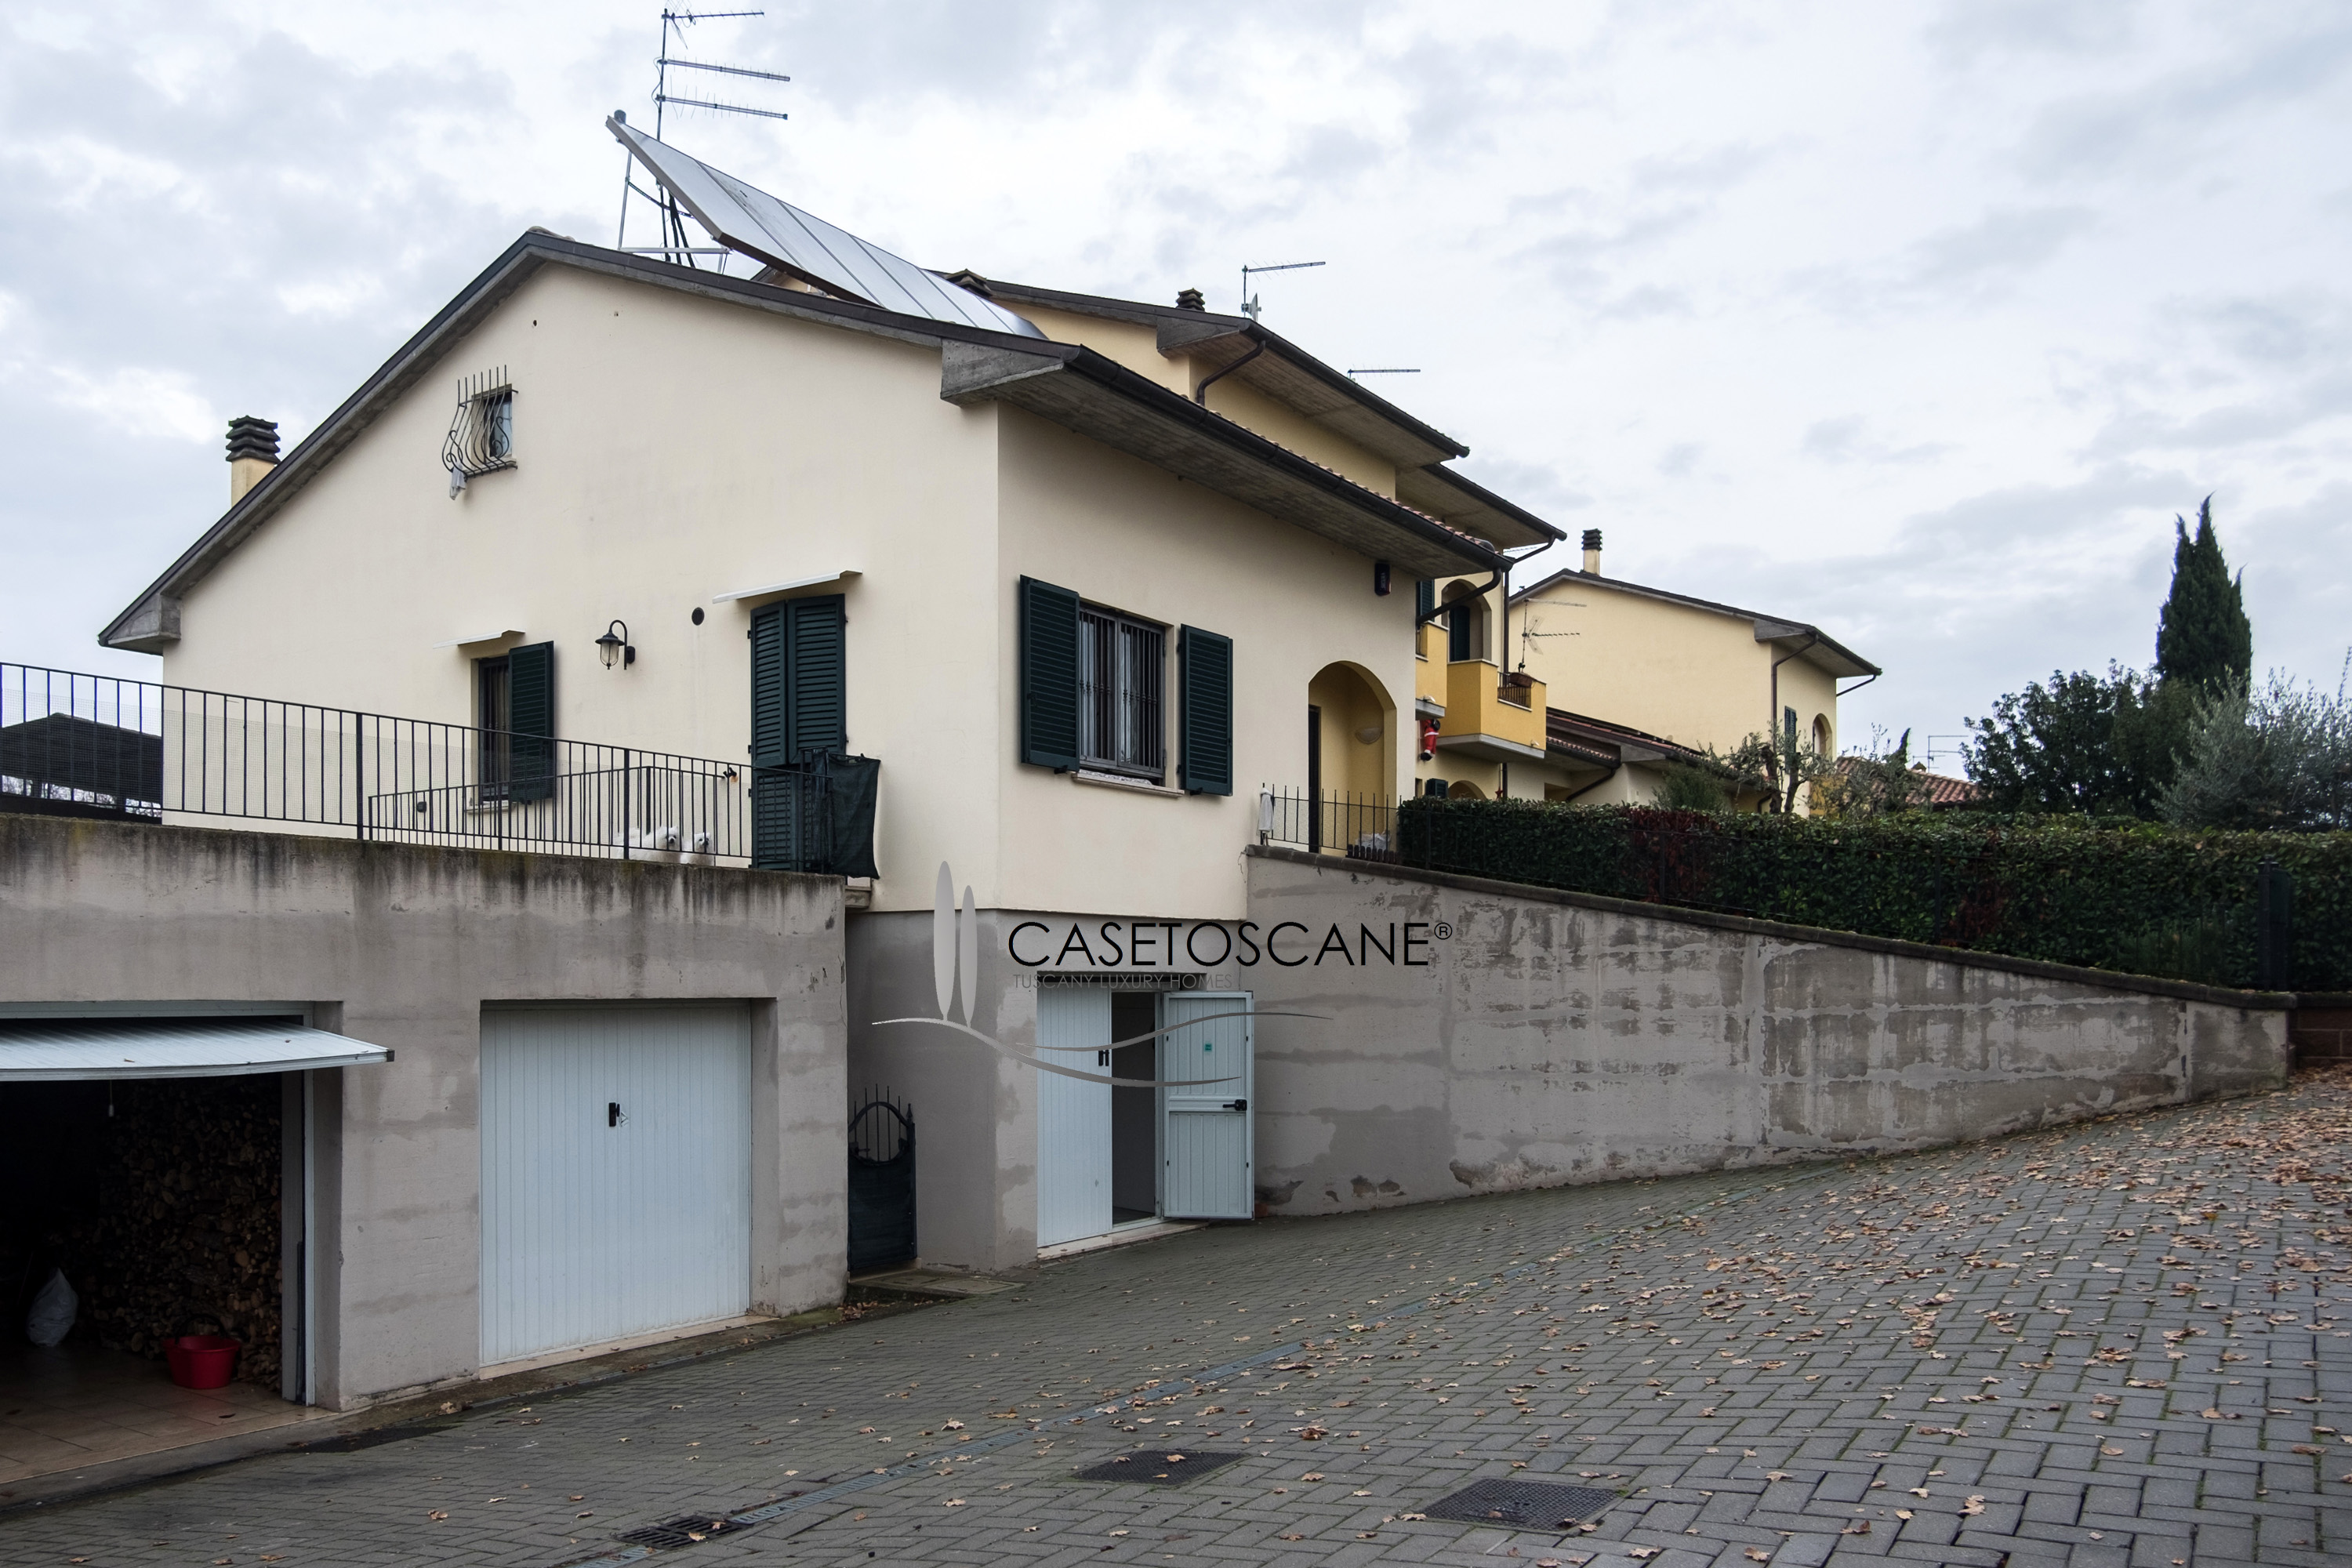 3087 - Villetta a schiera capotesta di mq.150 di recente costruzione a Lucignano (AR), con ampio giardino di mq.300.